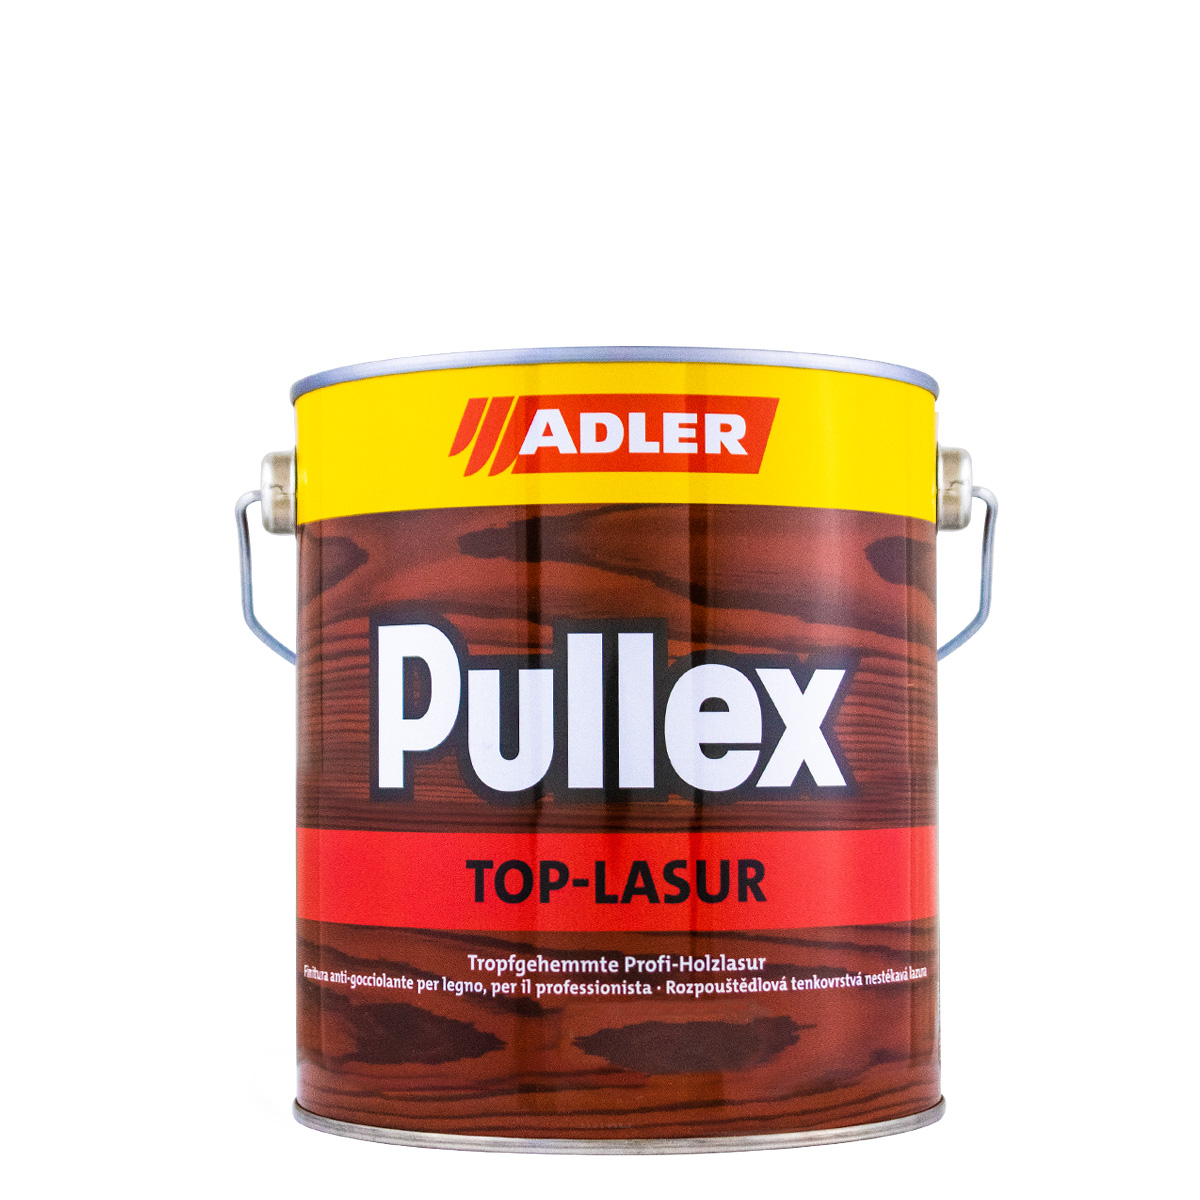 Adler Pullex Top Lasur 2,5L afzelia, Holzlasur, Dünnschichtlasur